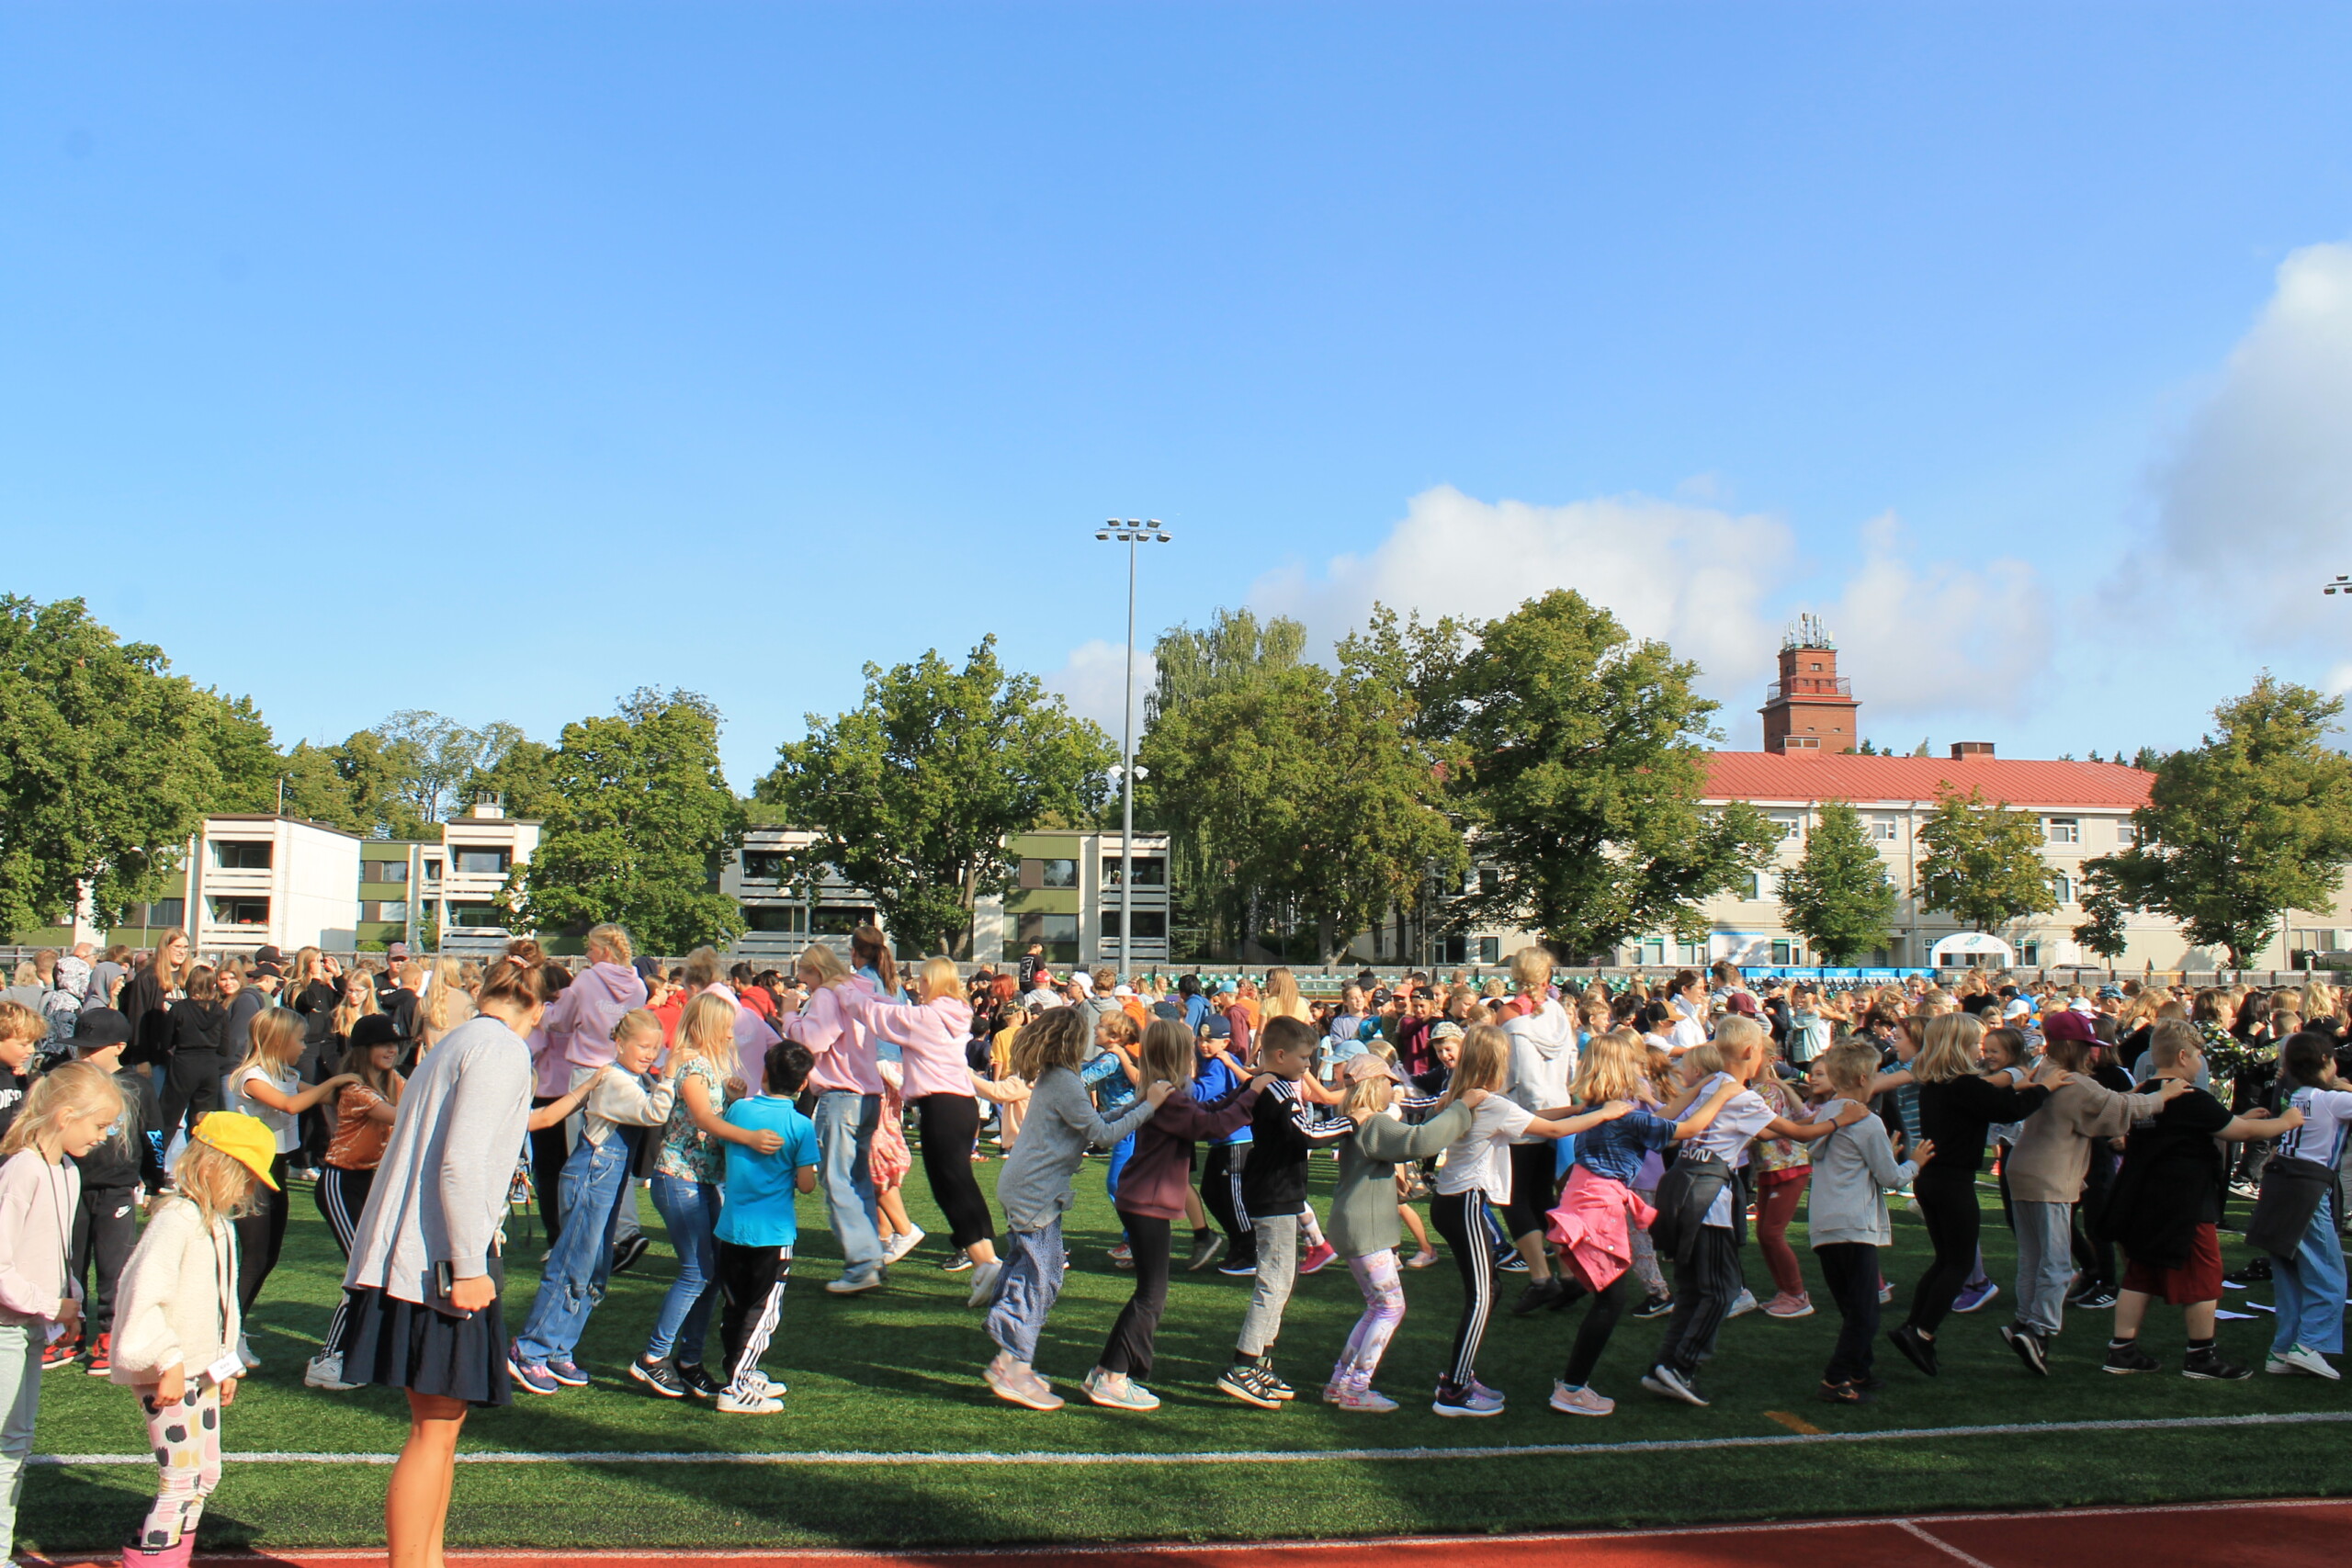 Elever och lärare är utomhus på en gräsplan och dansar letkajenkka. Eleverna är från skolorna Ekenäs högstadium, Seminarieskolan och Hakarinne i Ekenäs.